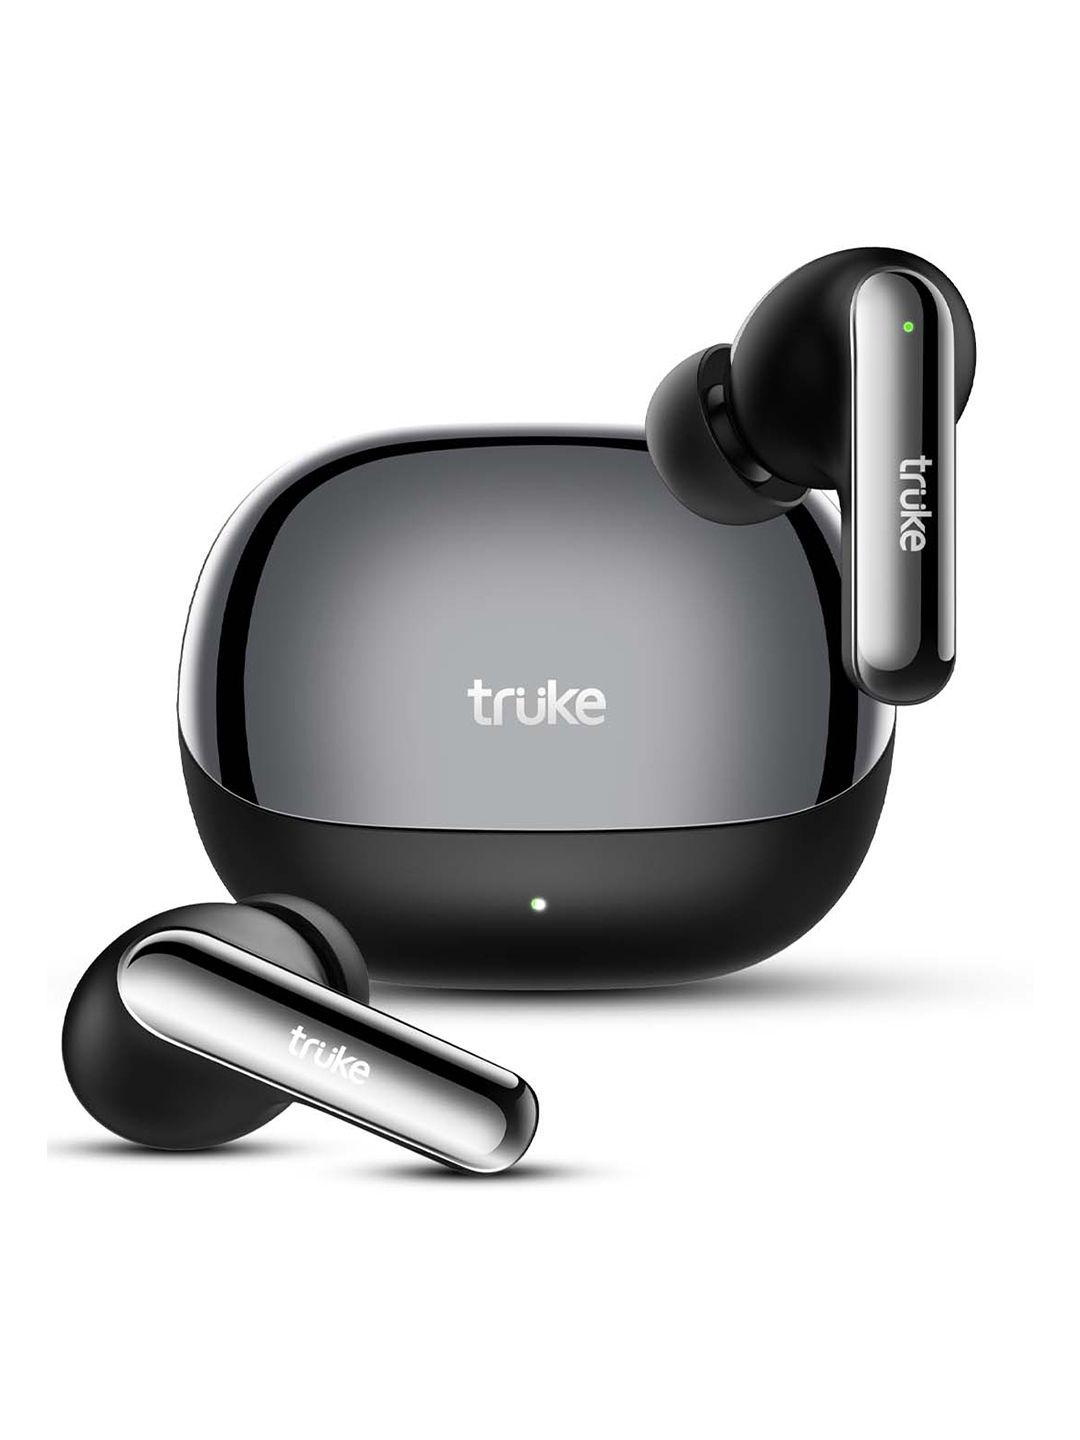 truke clarity 5 true wireless earbuds